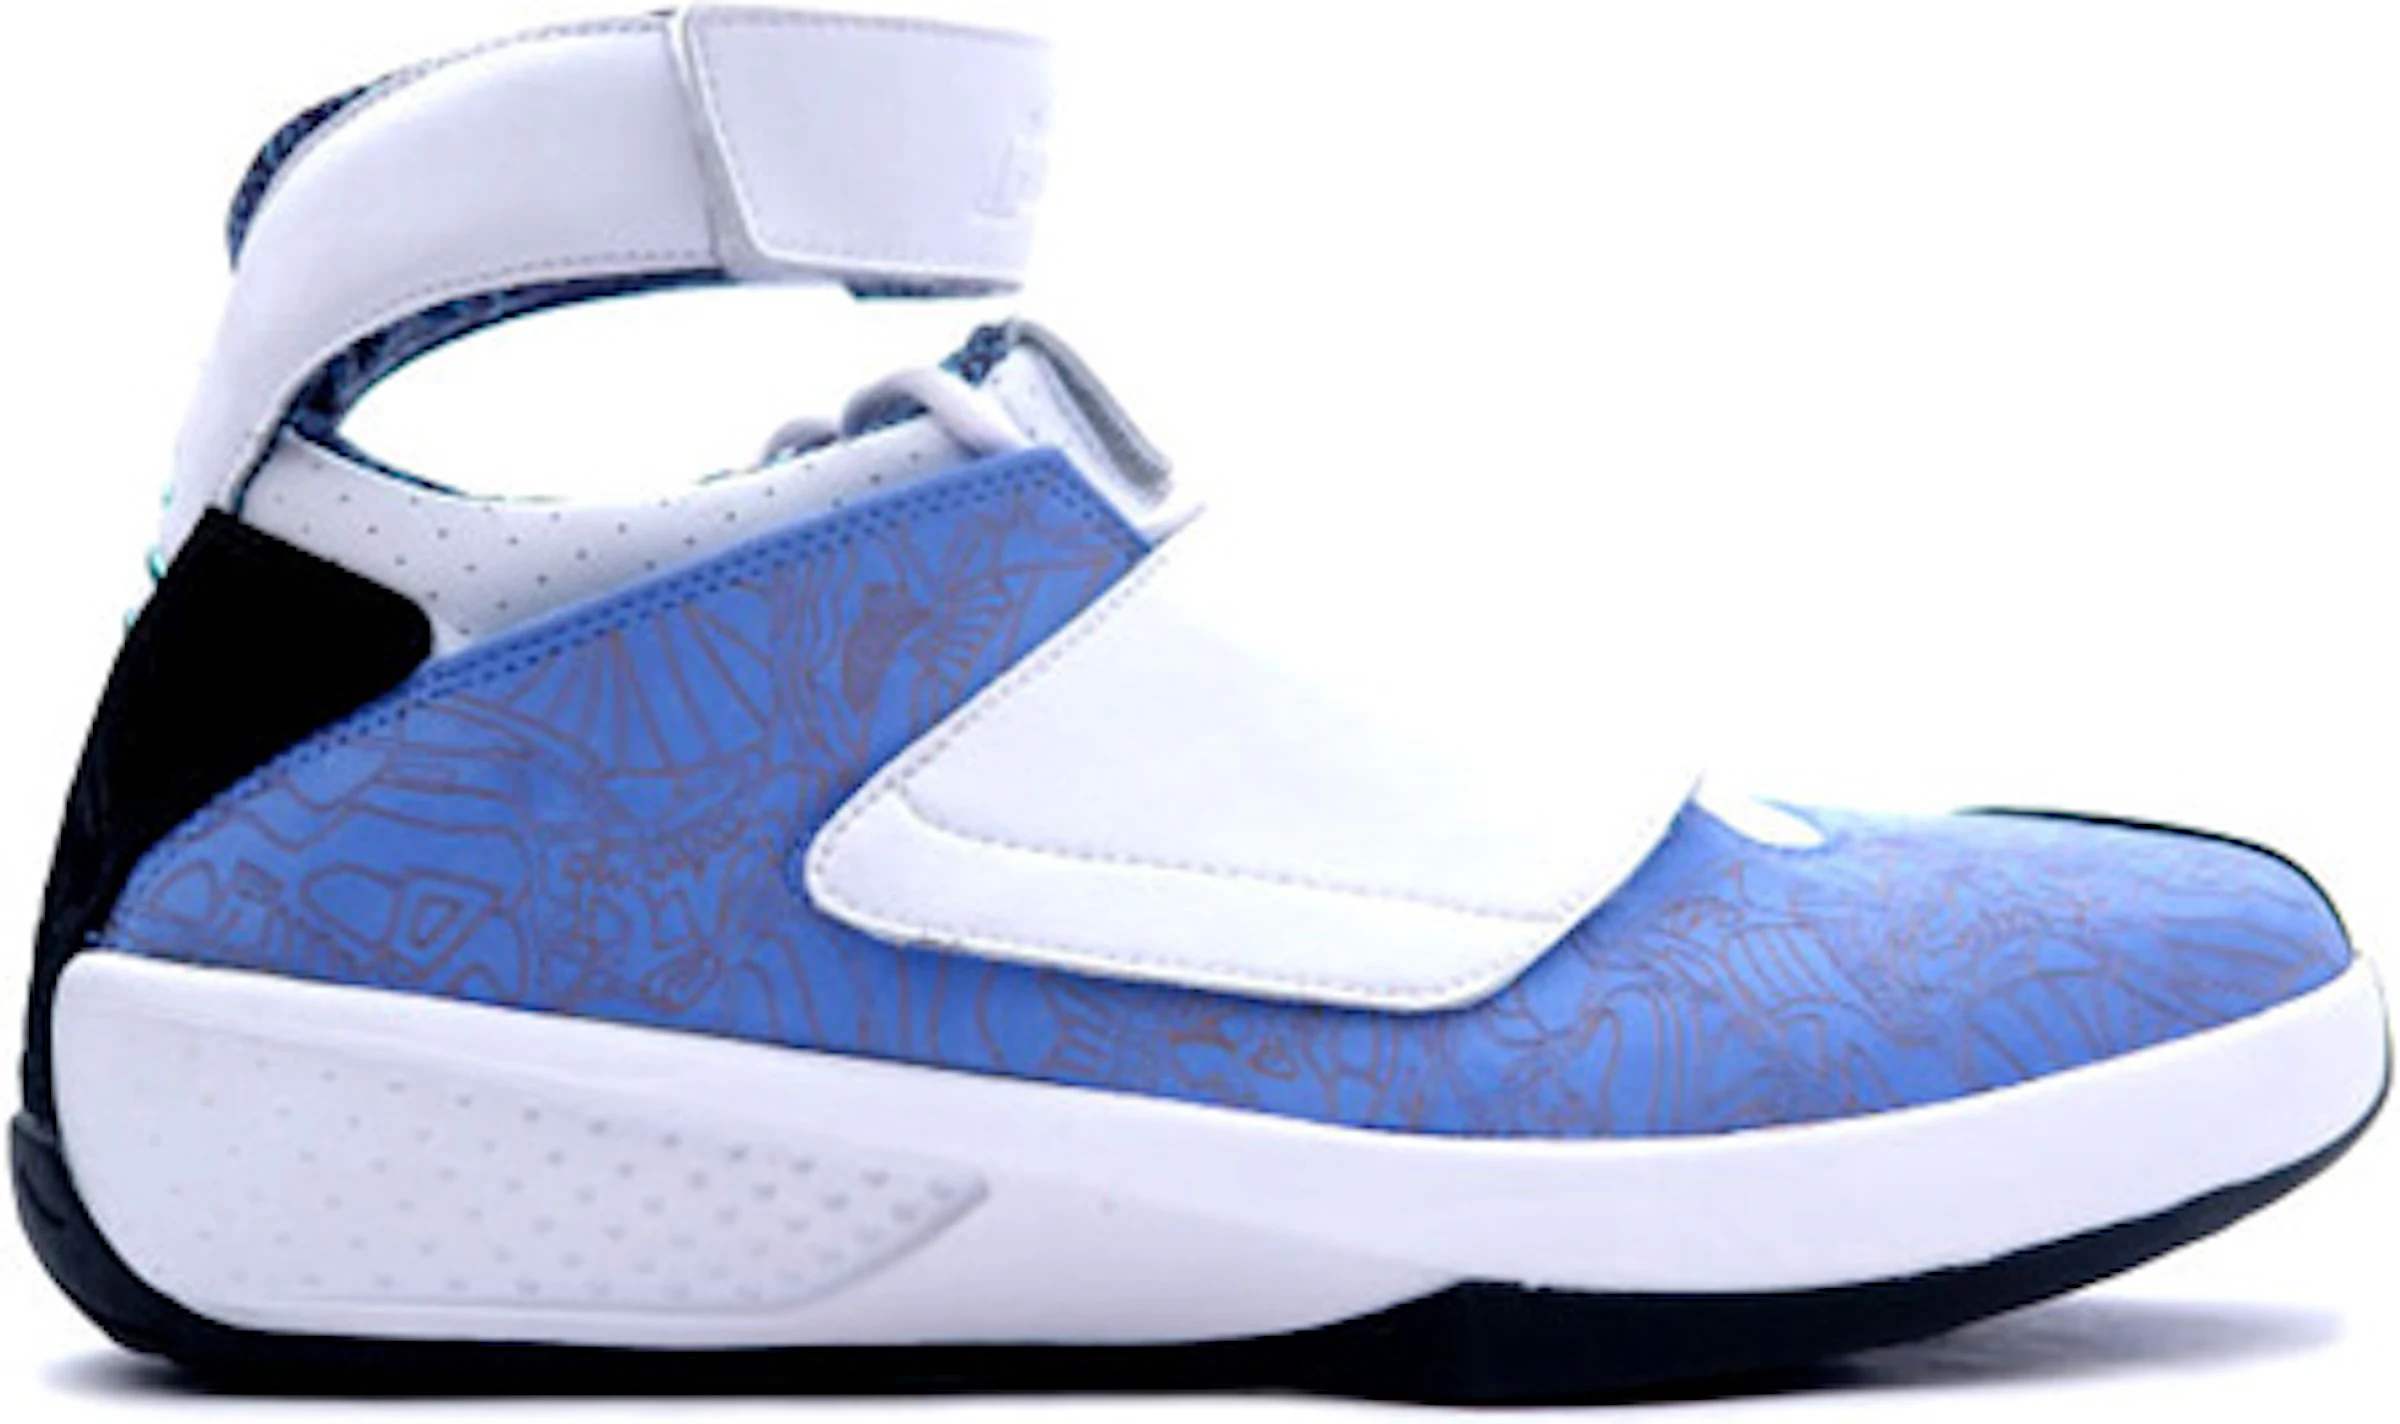 Compra Jordan 20 Calzado y sneakers nuevos - StockX